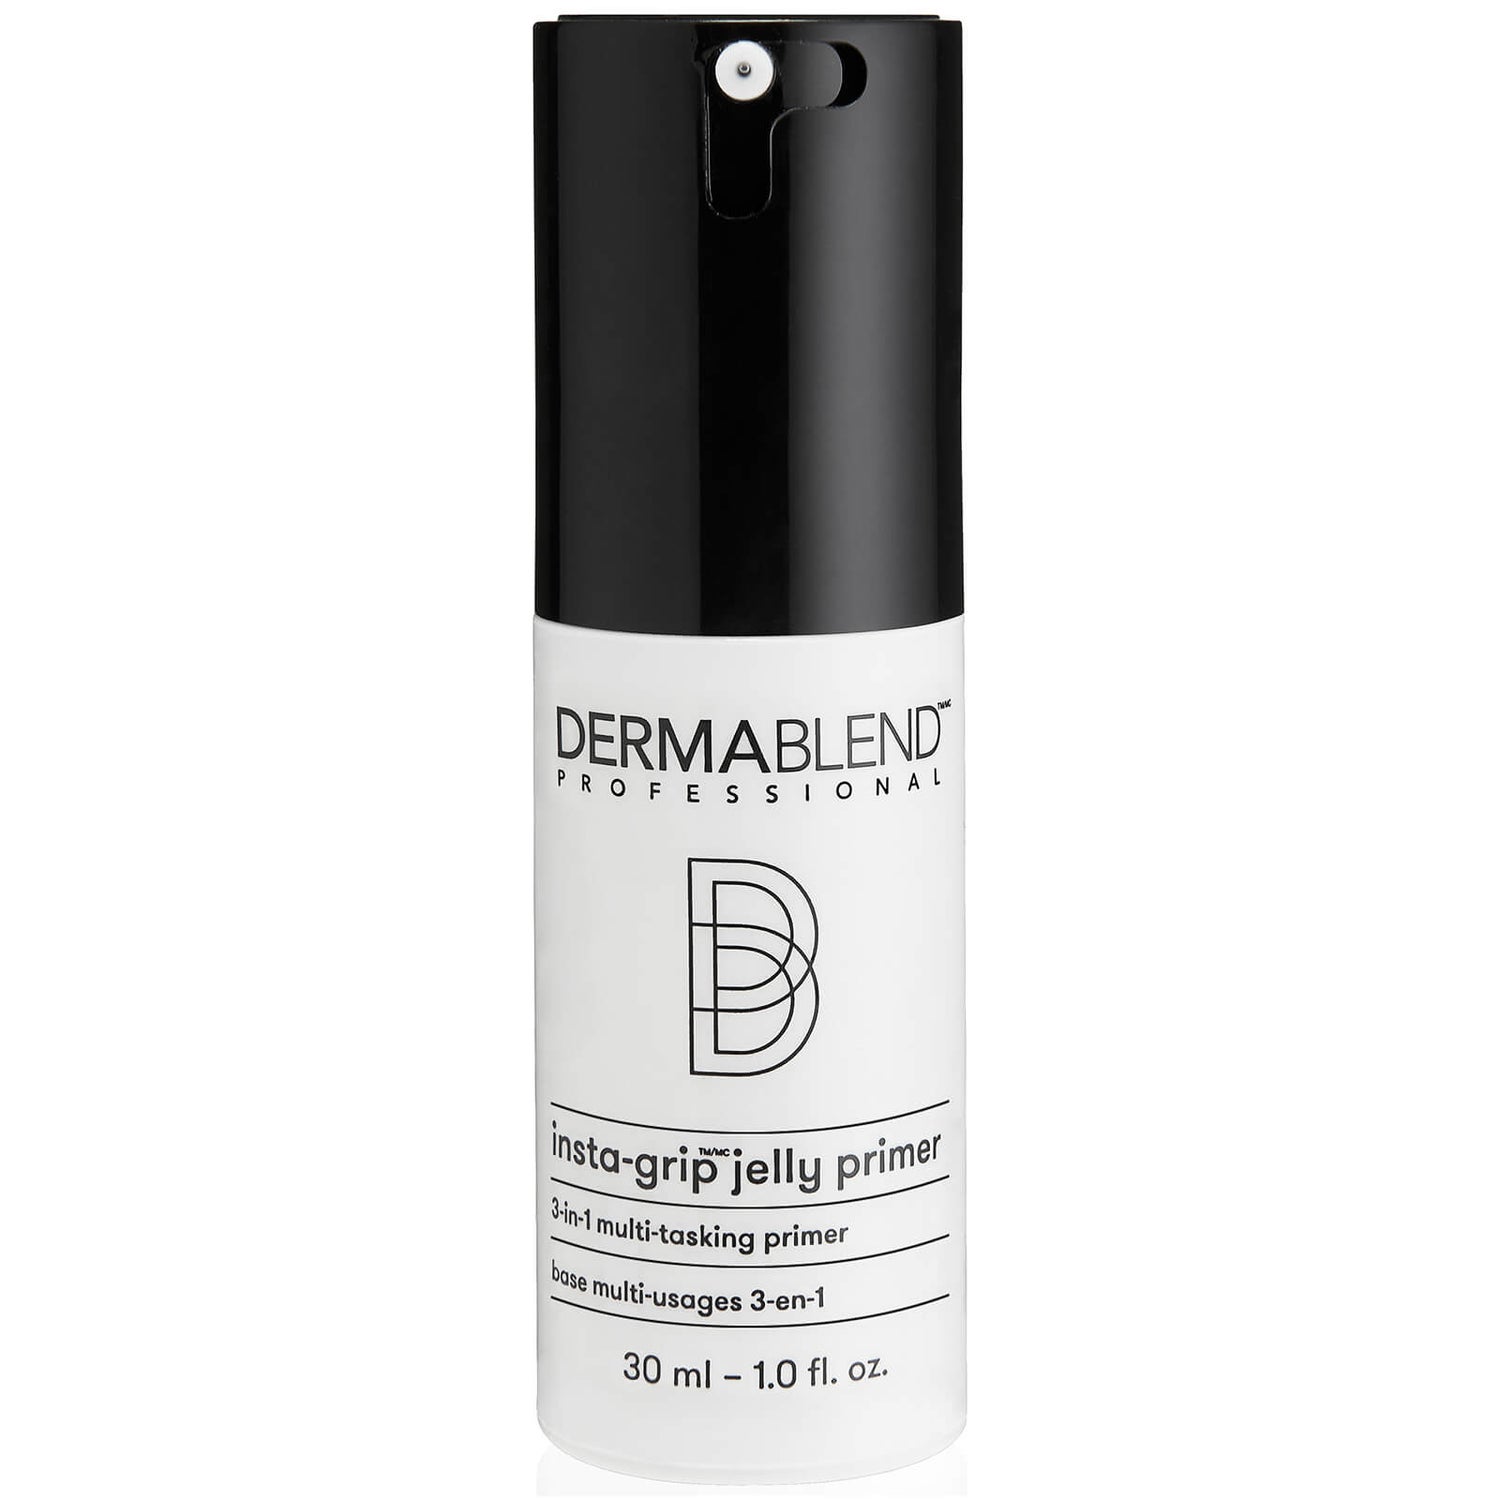 Dermablend Insta-grip Jelly Makeup Primer (1 fl. oz.)